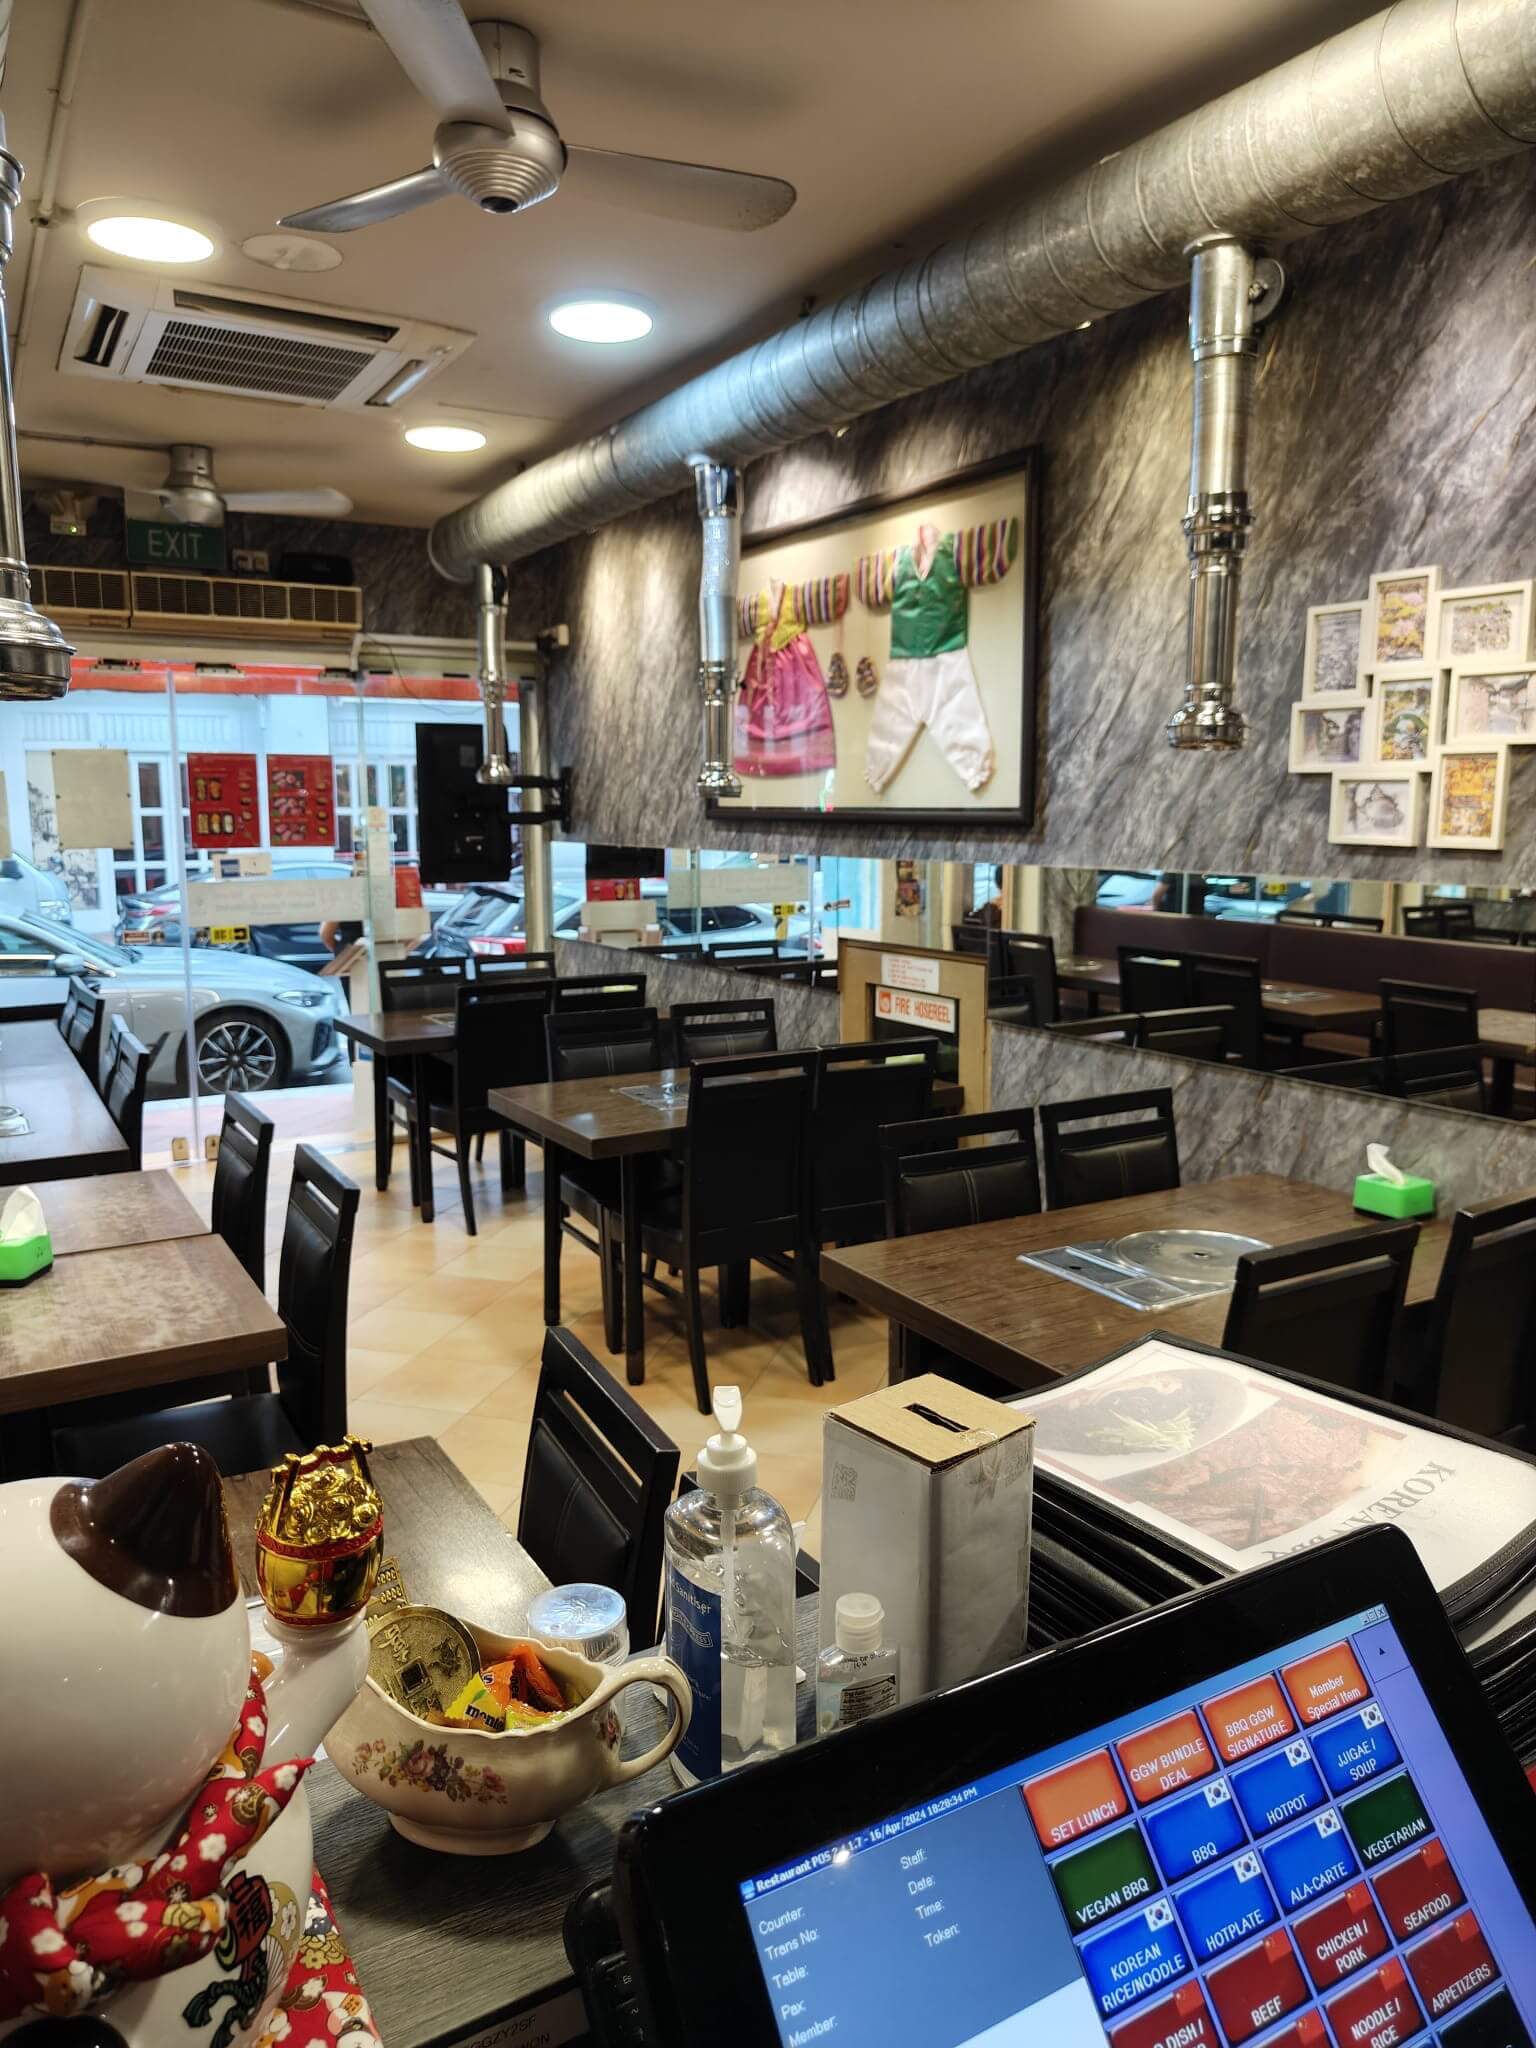 唐人街韩国餐馆转让。Korean BBQ Restaurant Established Since 2010 in Chinatown Area For Takeover